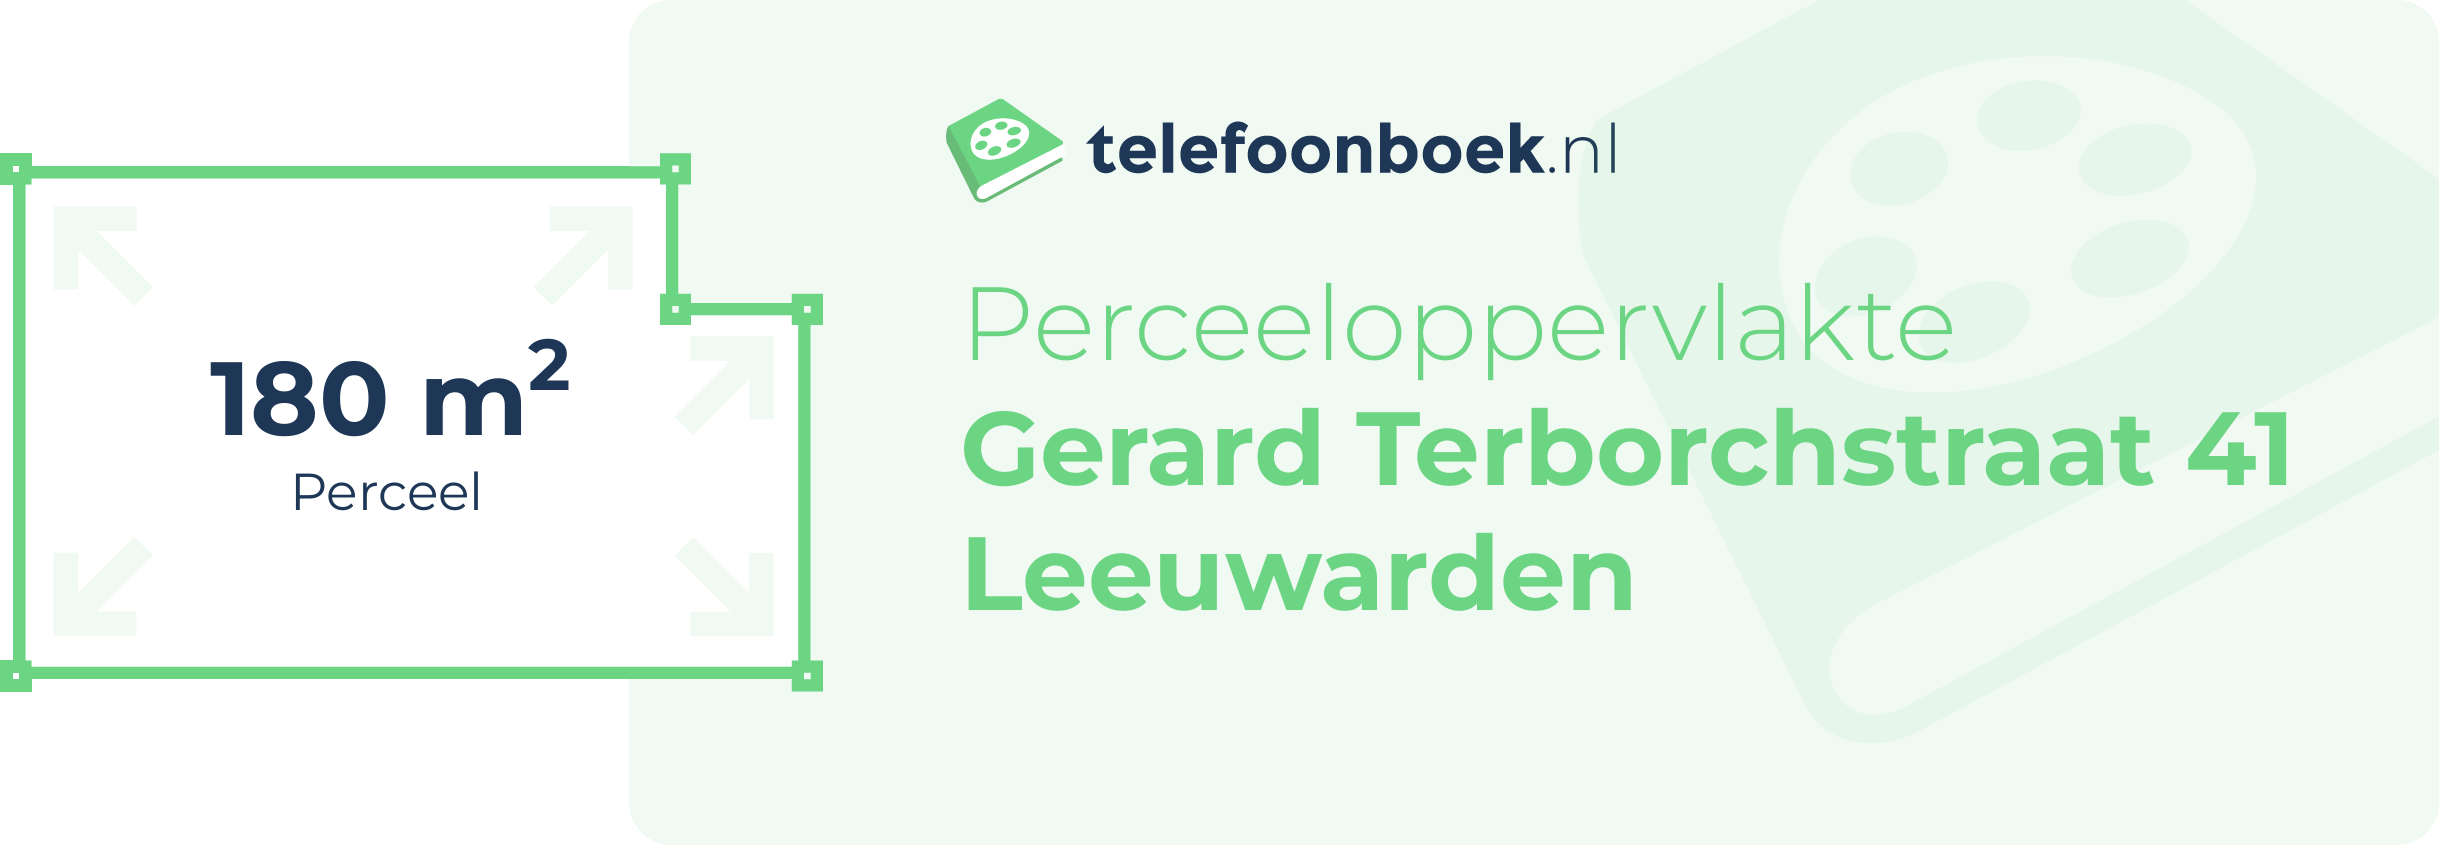 Perceeloppervlakte Gerard Terborchstraat 41 Leeuwarden